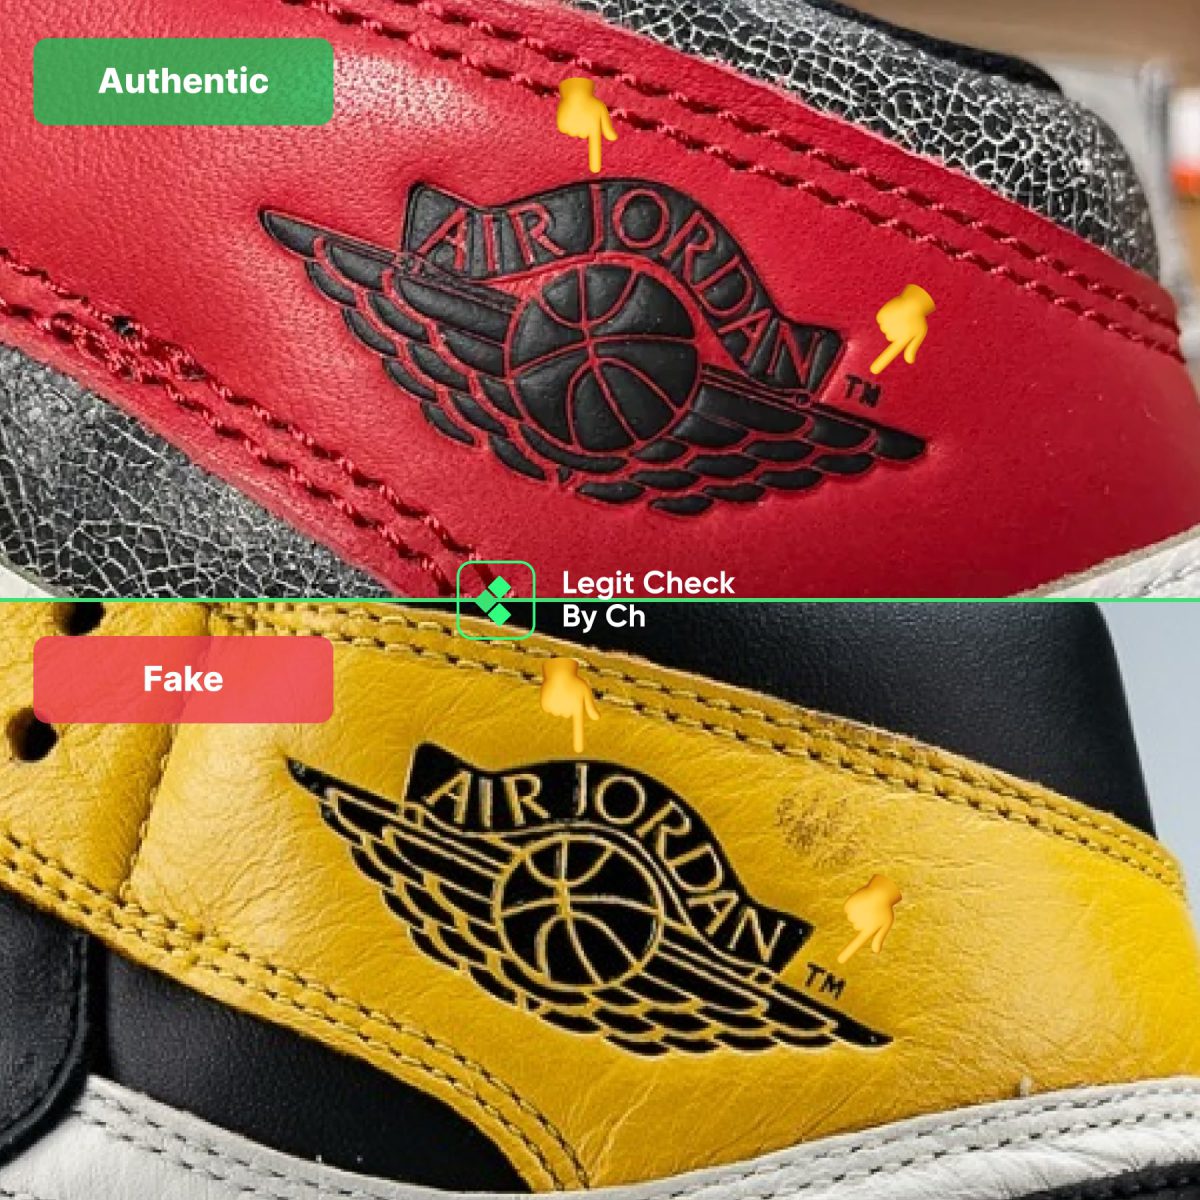 Jordan 1 GS Fake Vs Real Comparison - Logos